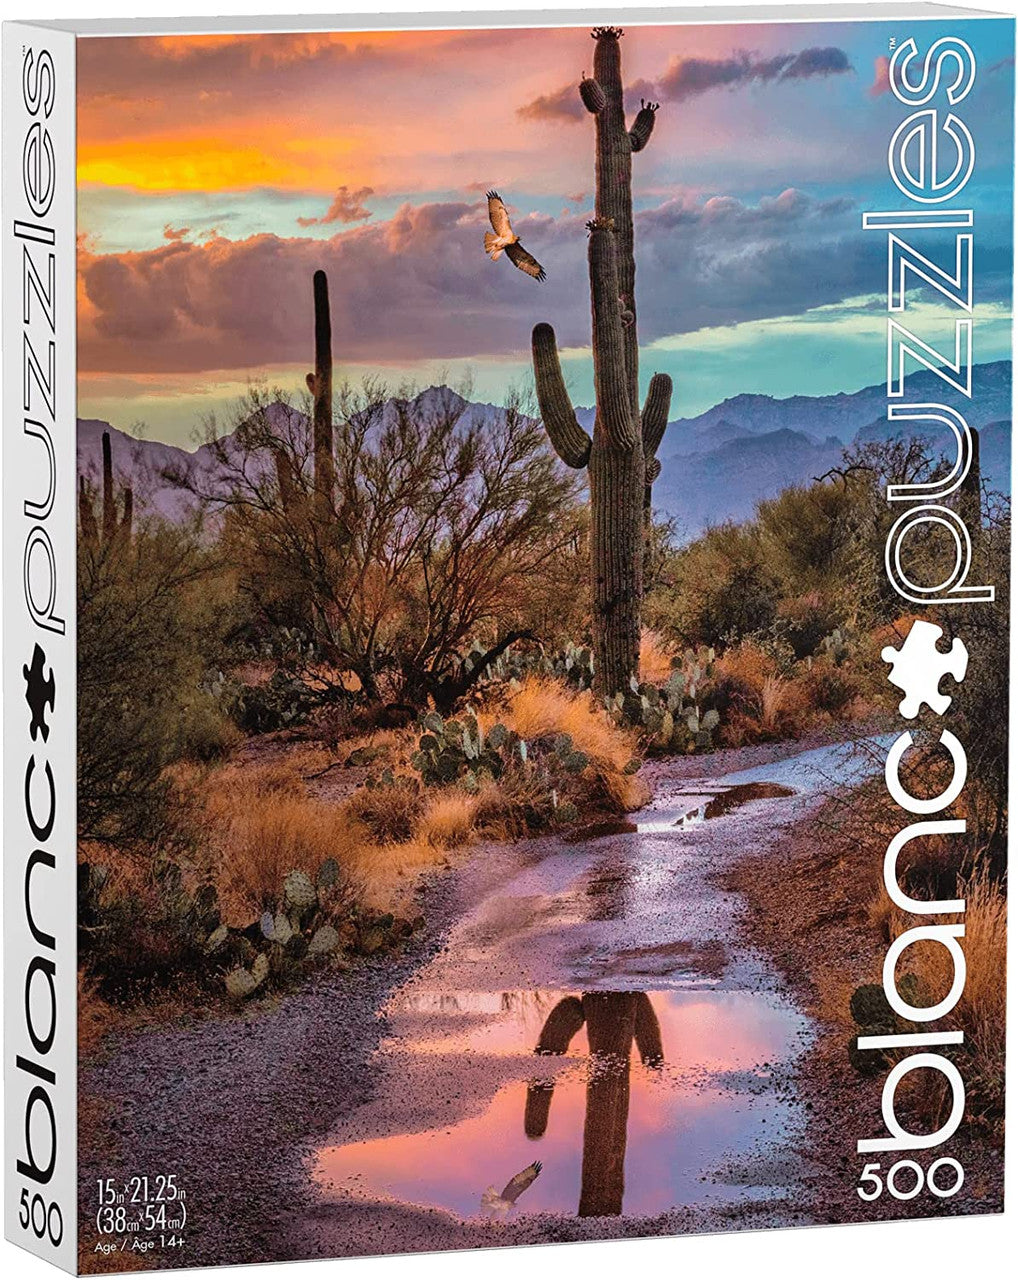 Cactus Reflection, Arizona